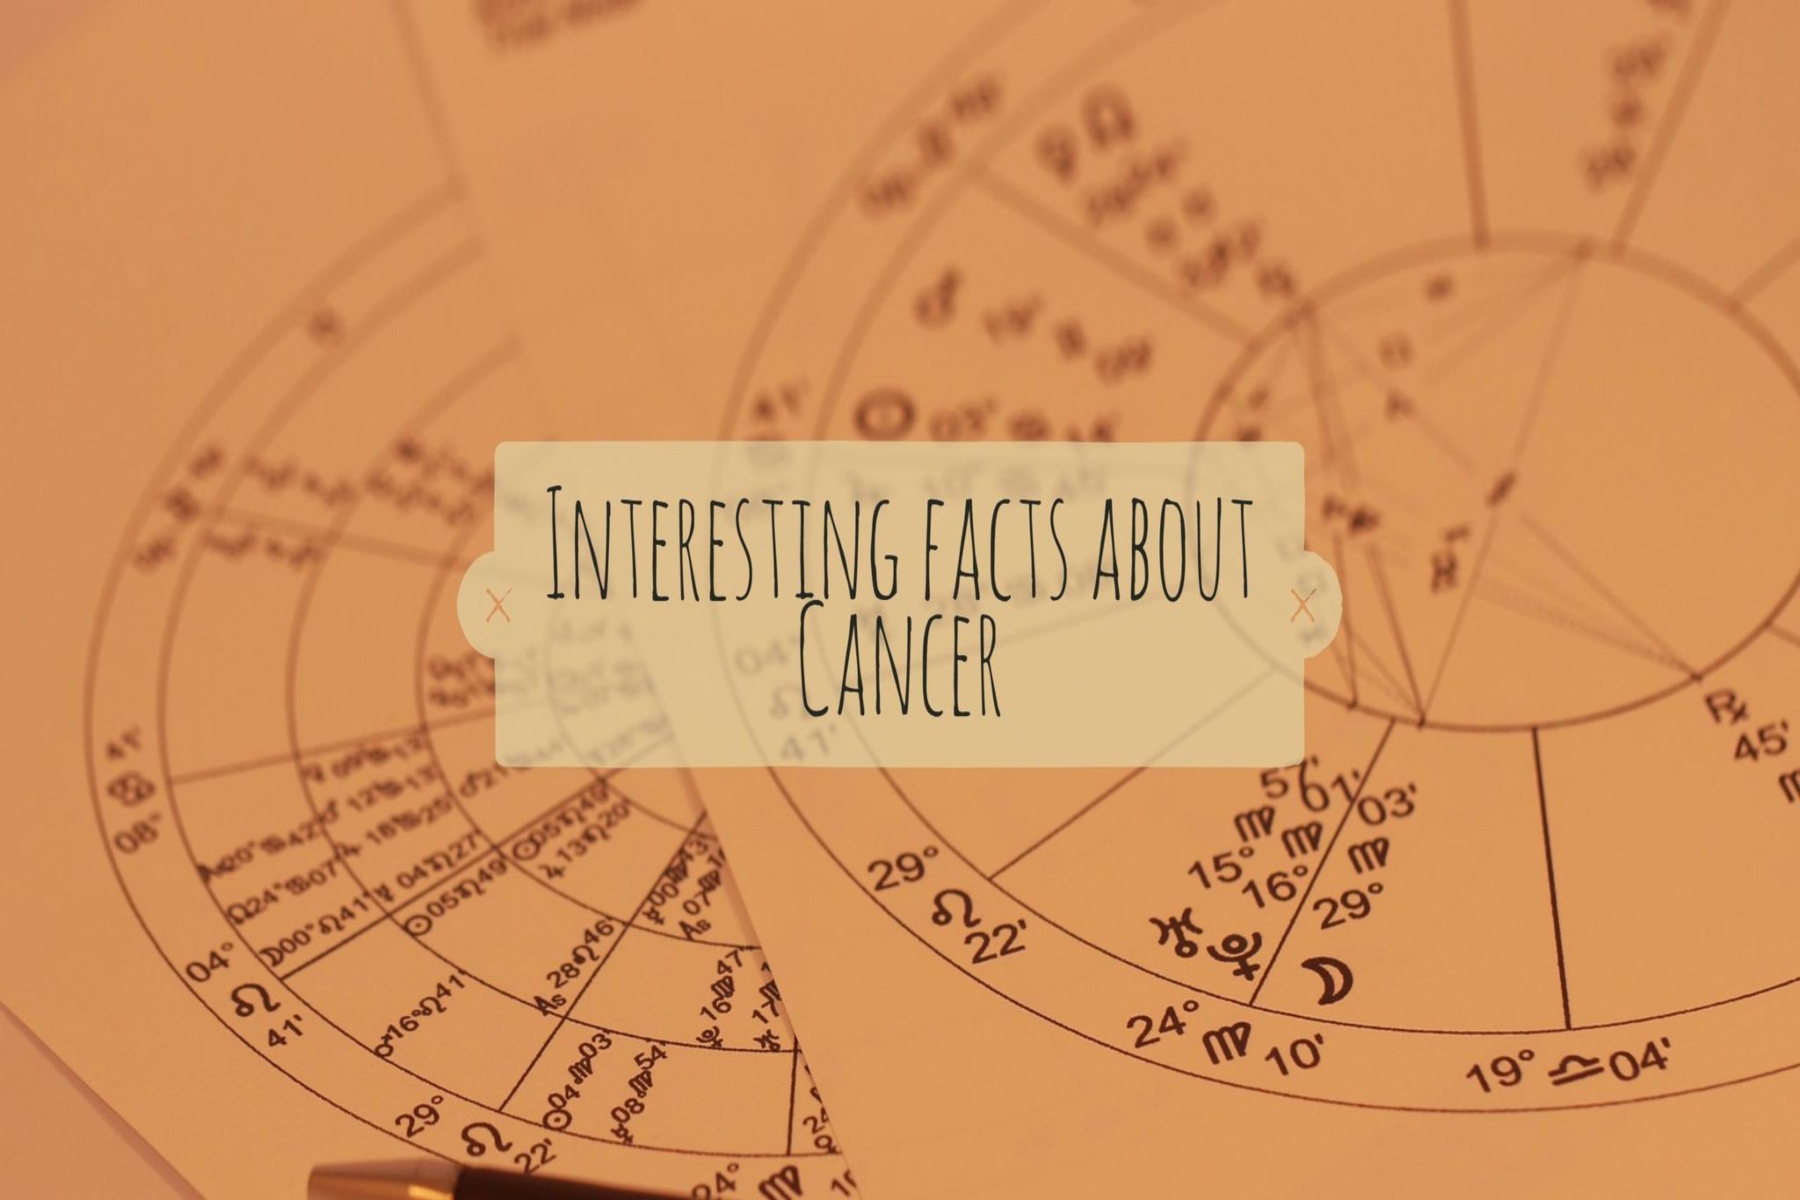 Σχέσεις με καρκίνο: Ποιο ζώδιο αποτελεί το ιδανικό ταίρι του Καρκίνου σύμφωνα τα άστρα;